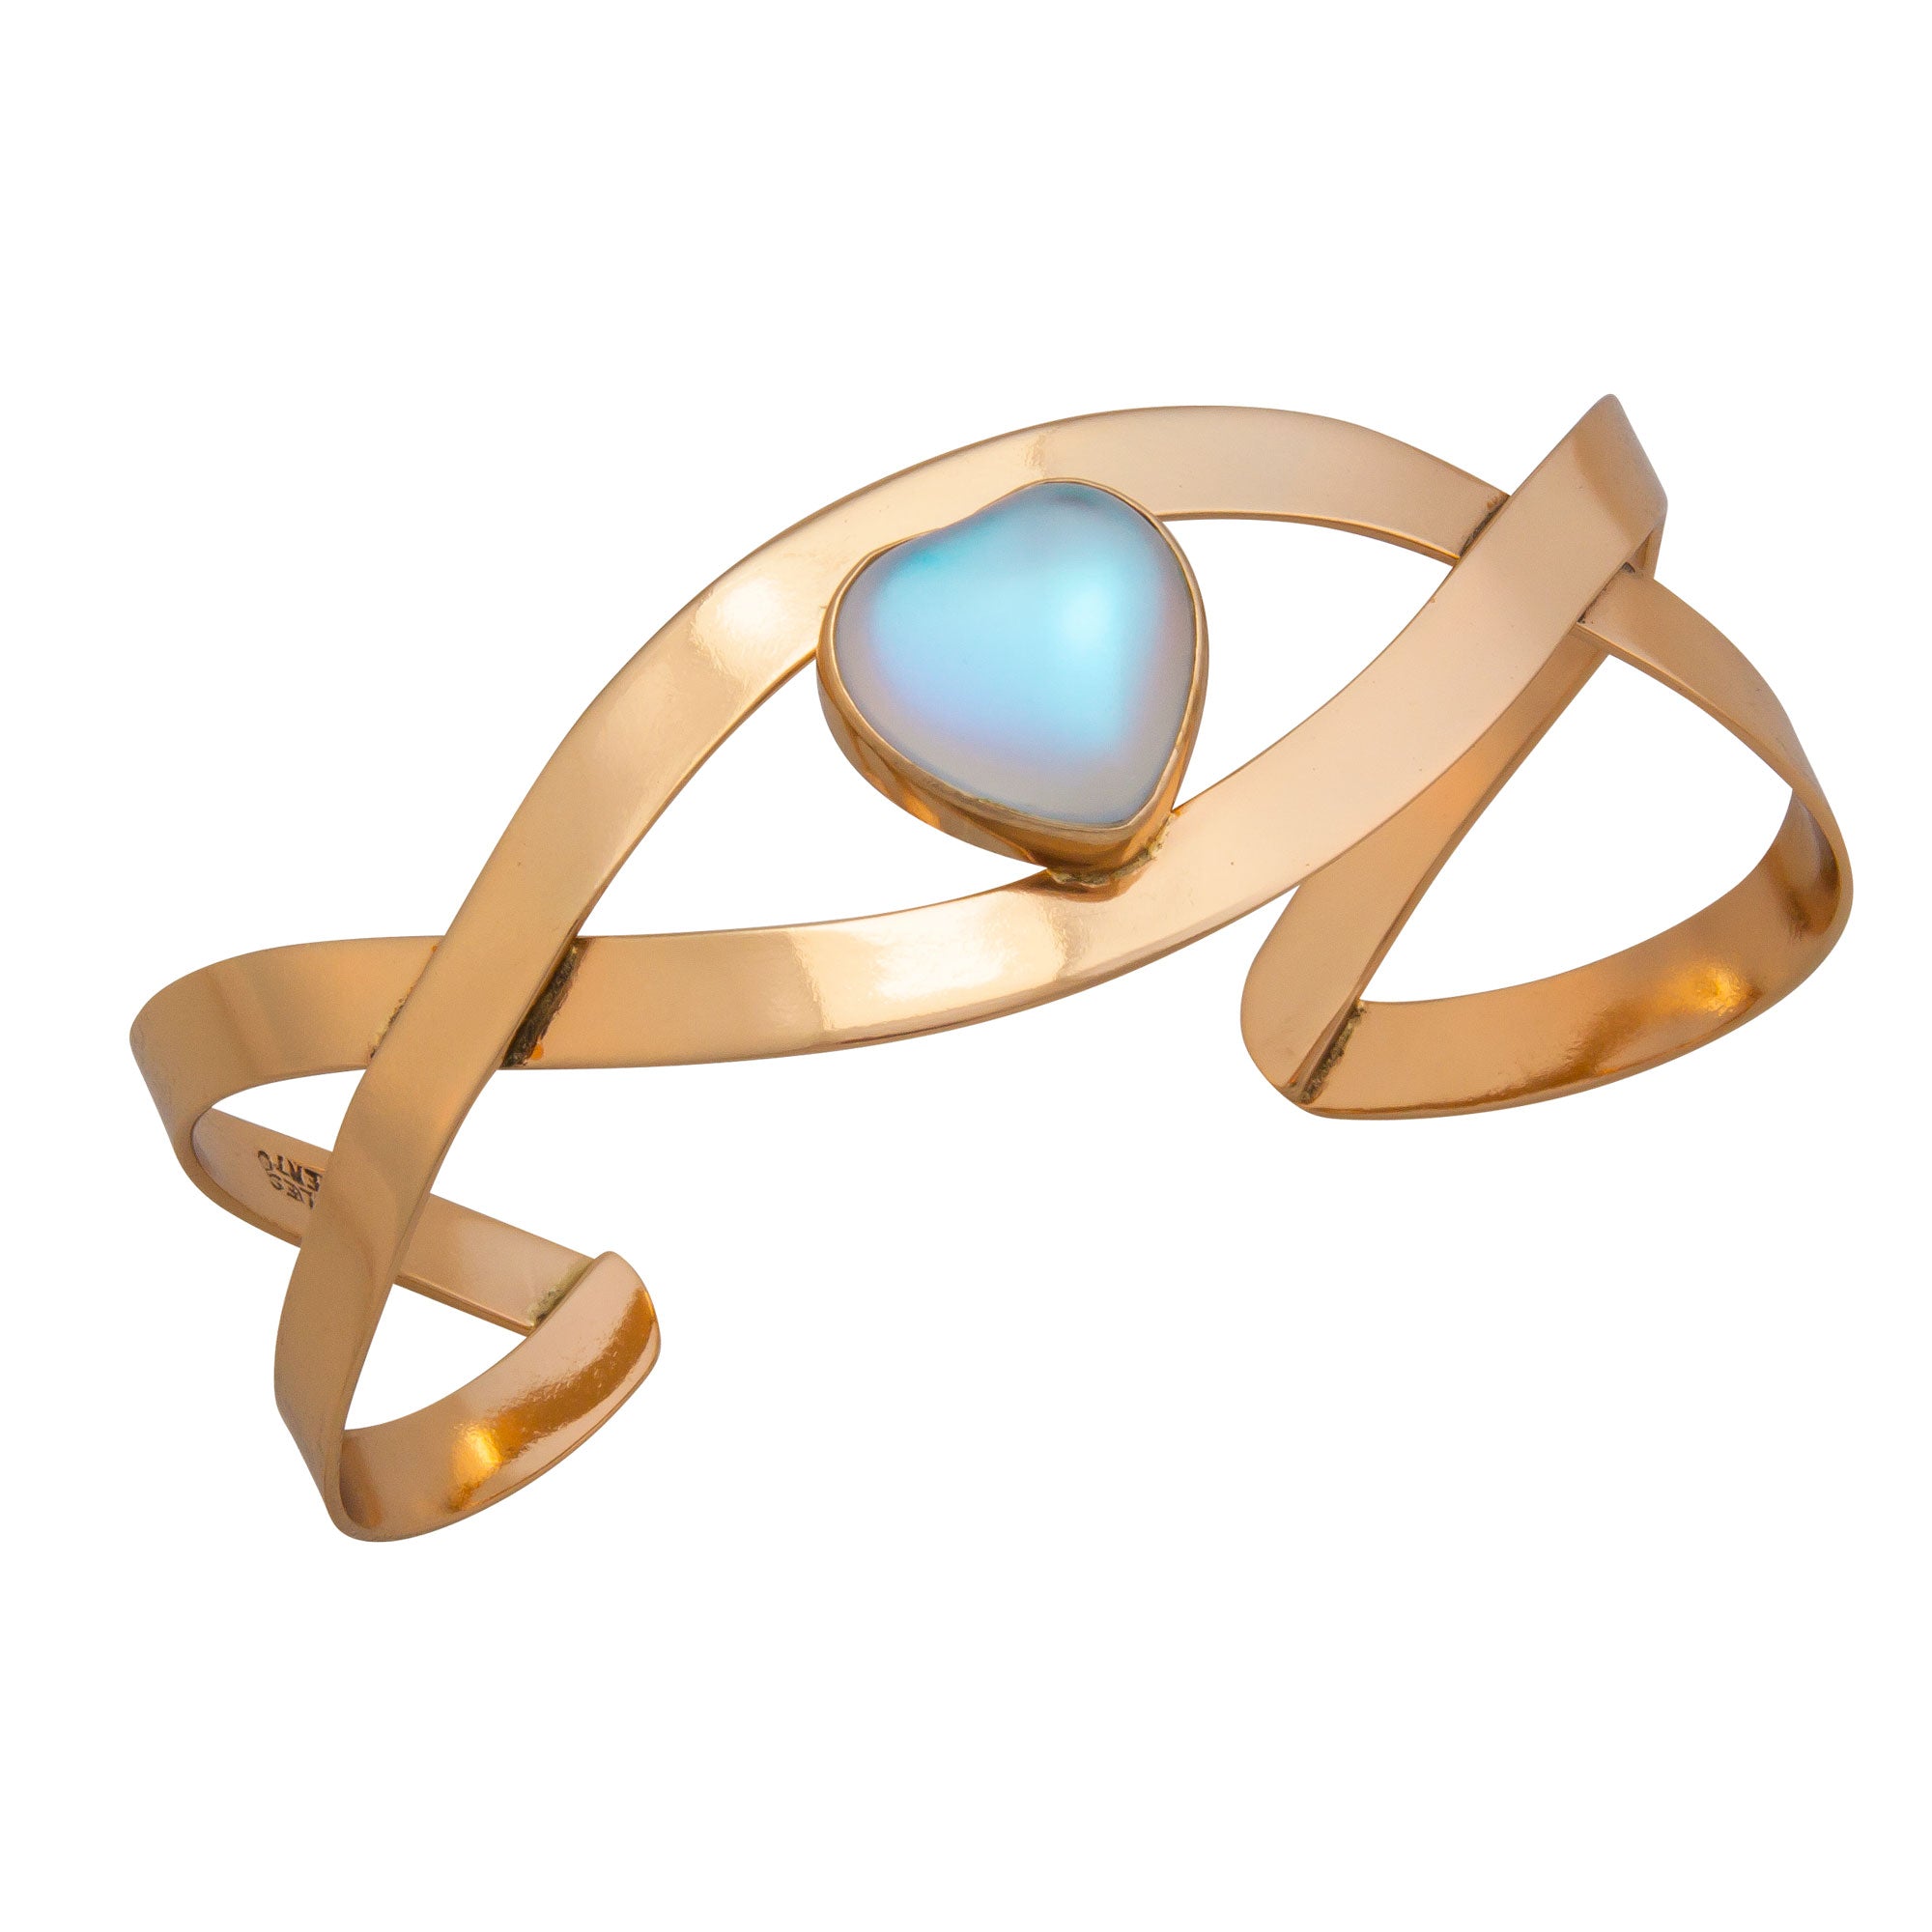 Alchemia Luminite Heart Infinity Cuff | Charles Albert Jewelry